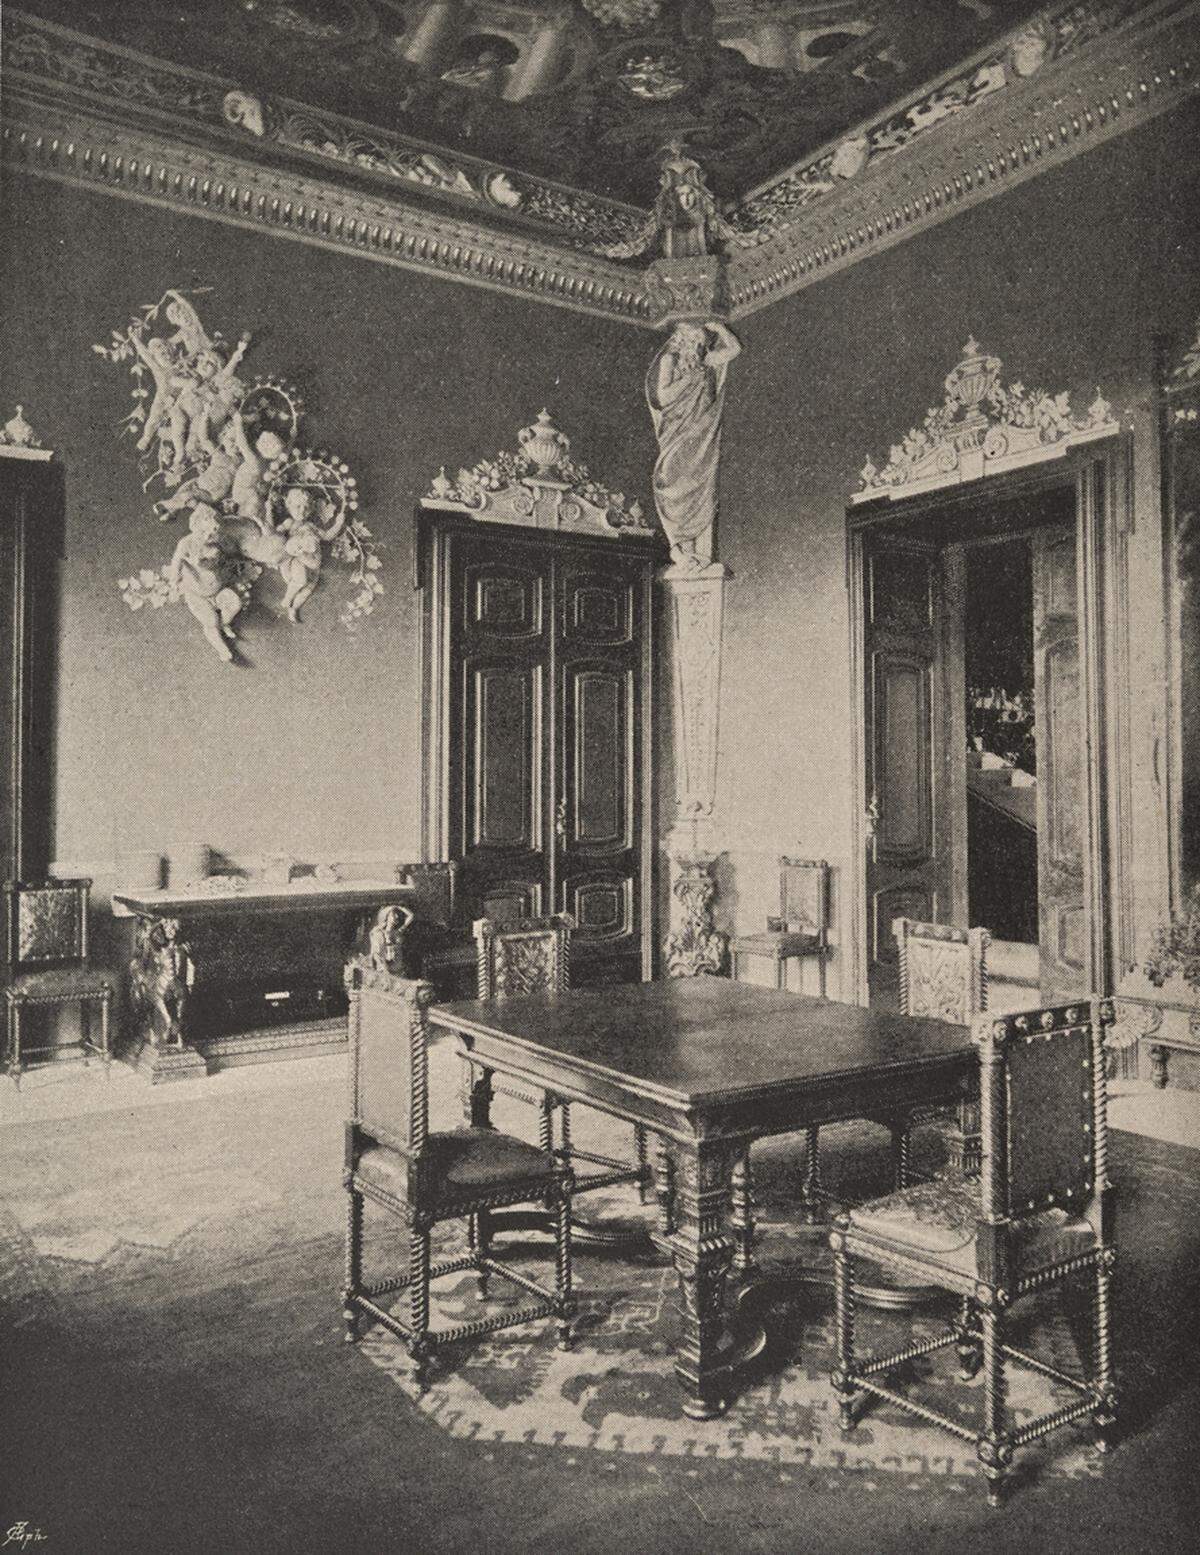 Fotos, Bilder und Reproduktionen des Inneren wie private Gegenstände der Monarchin werden ausgestellt. Reproduktion Innenaufnahme Achilleon